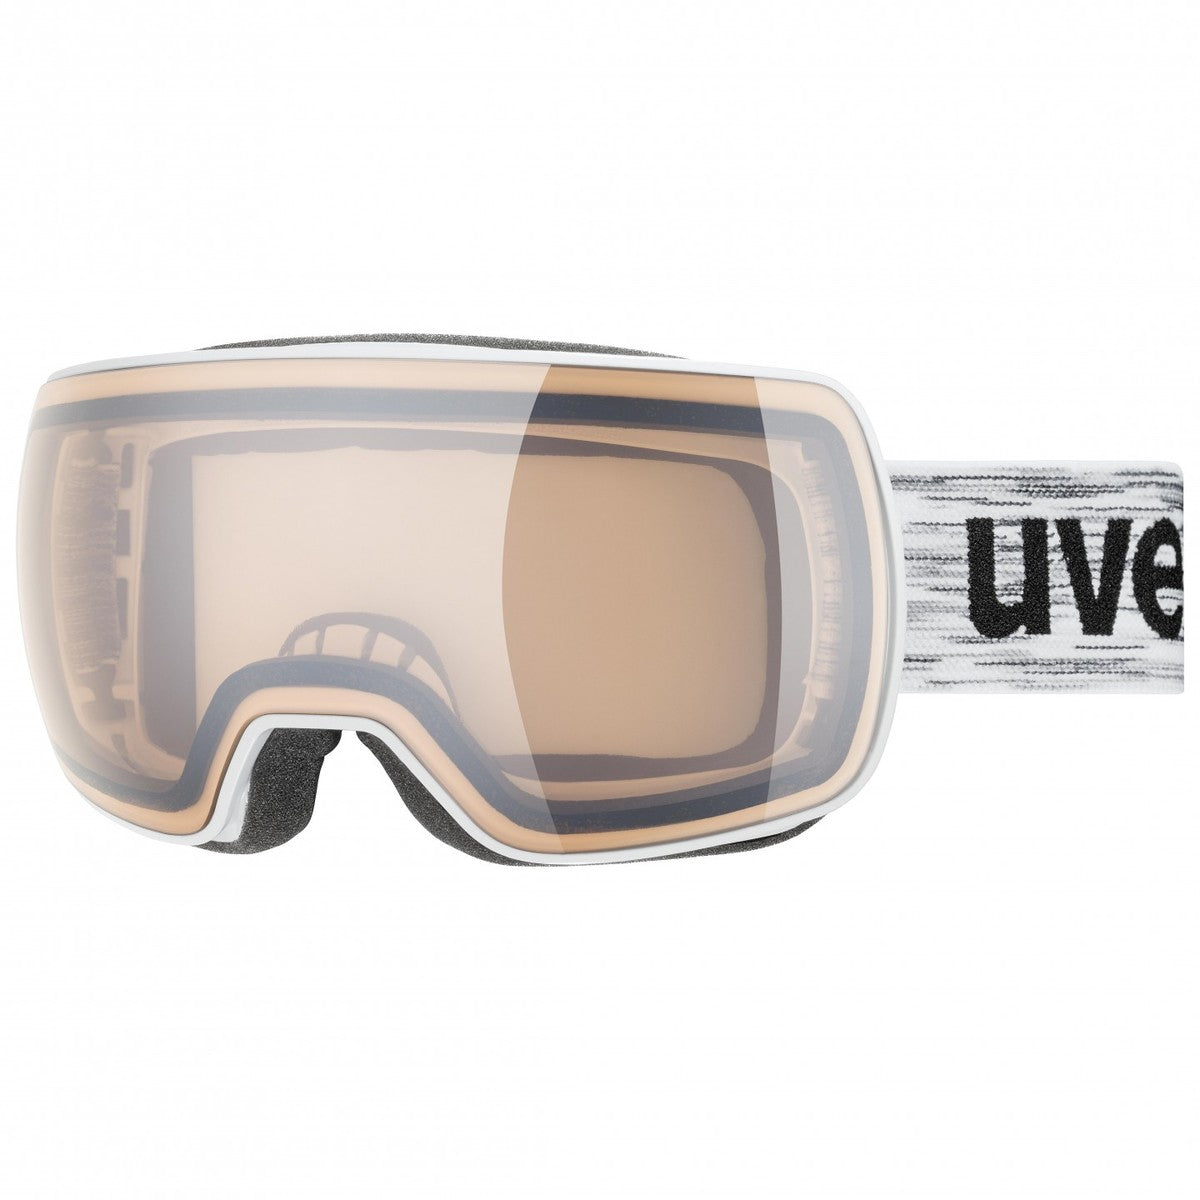 Uvex Compact V skibril meekleurend wit